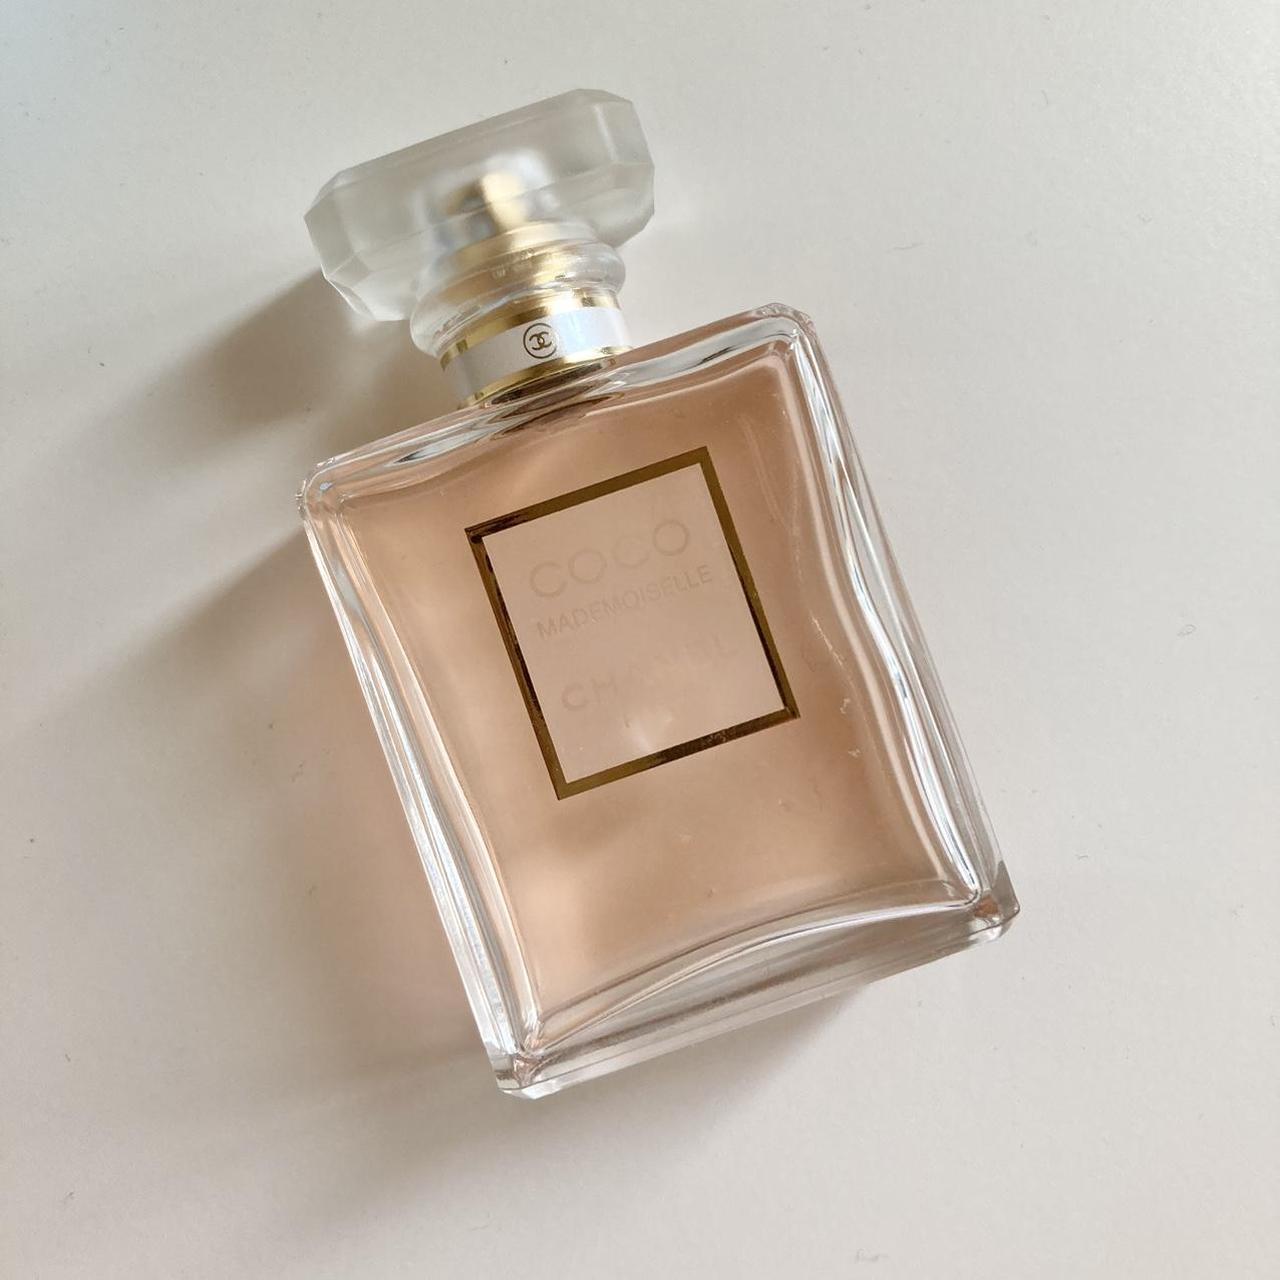 Sold) Chanel Coco Mademoiselle Eau de Parfum 50ml - Depop